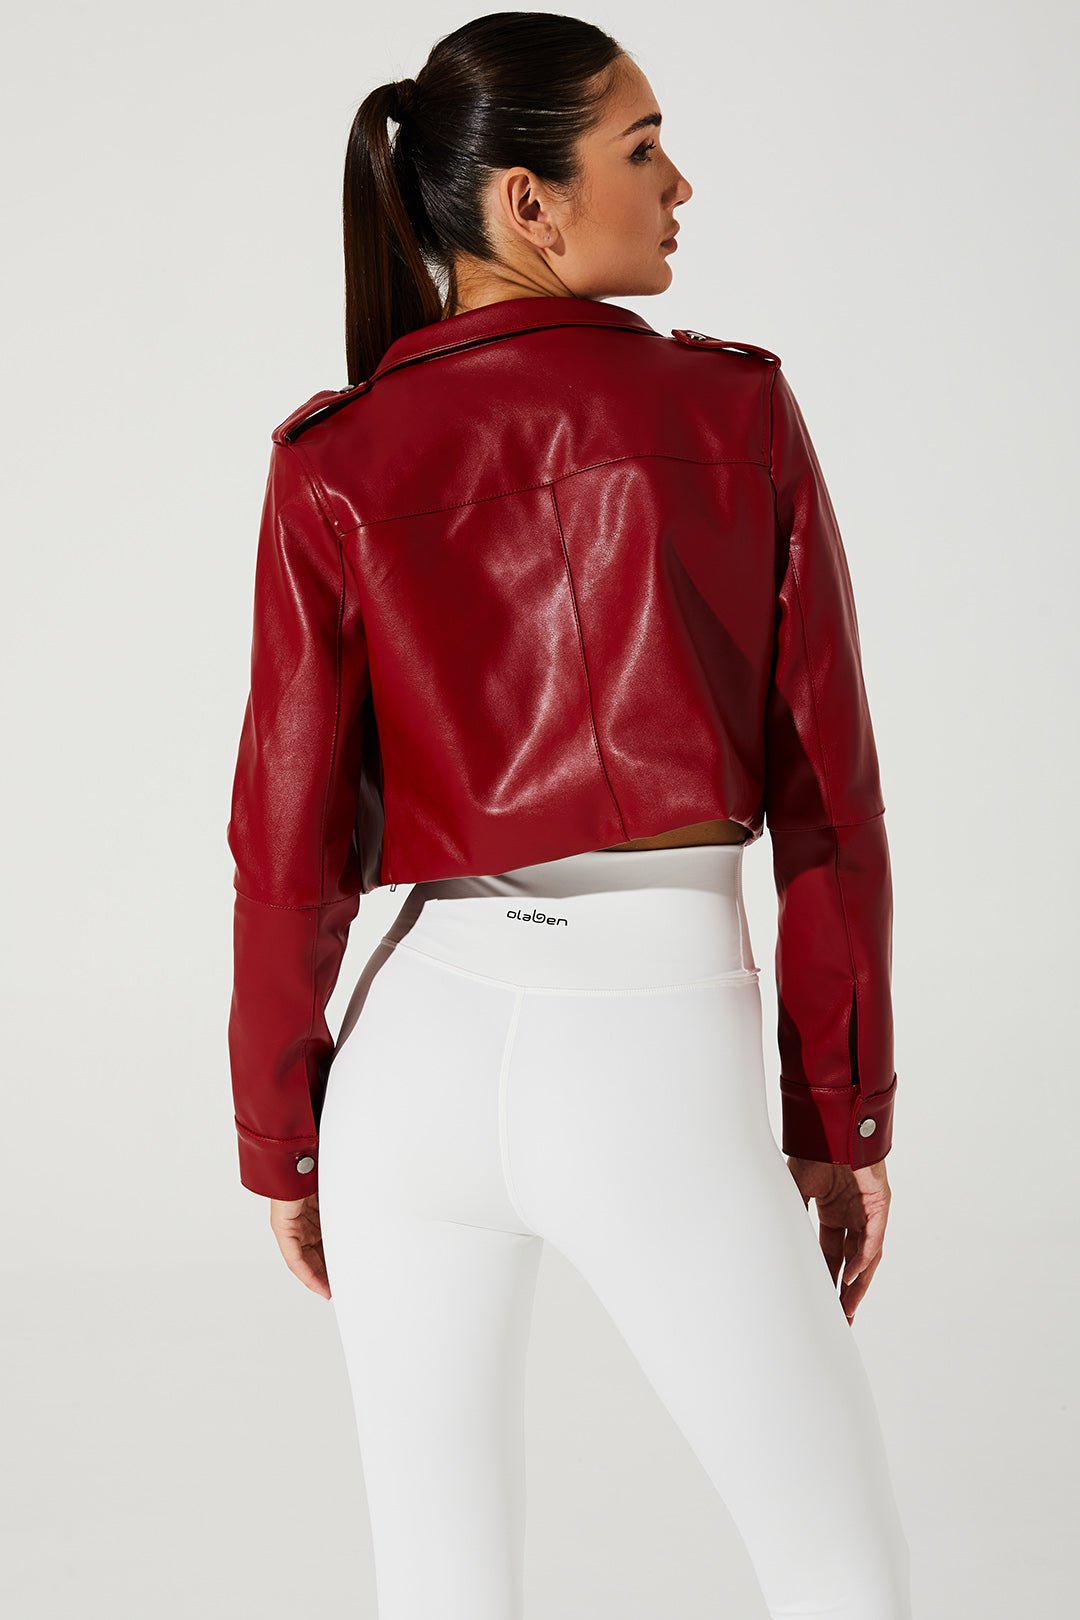 Stylish Viva Magenta Red Urban Rebel Women's Jacket - OW-0042-WJK-RD - Image 3.